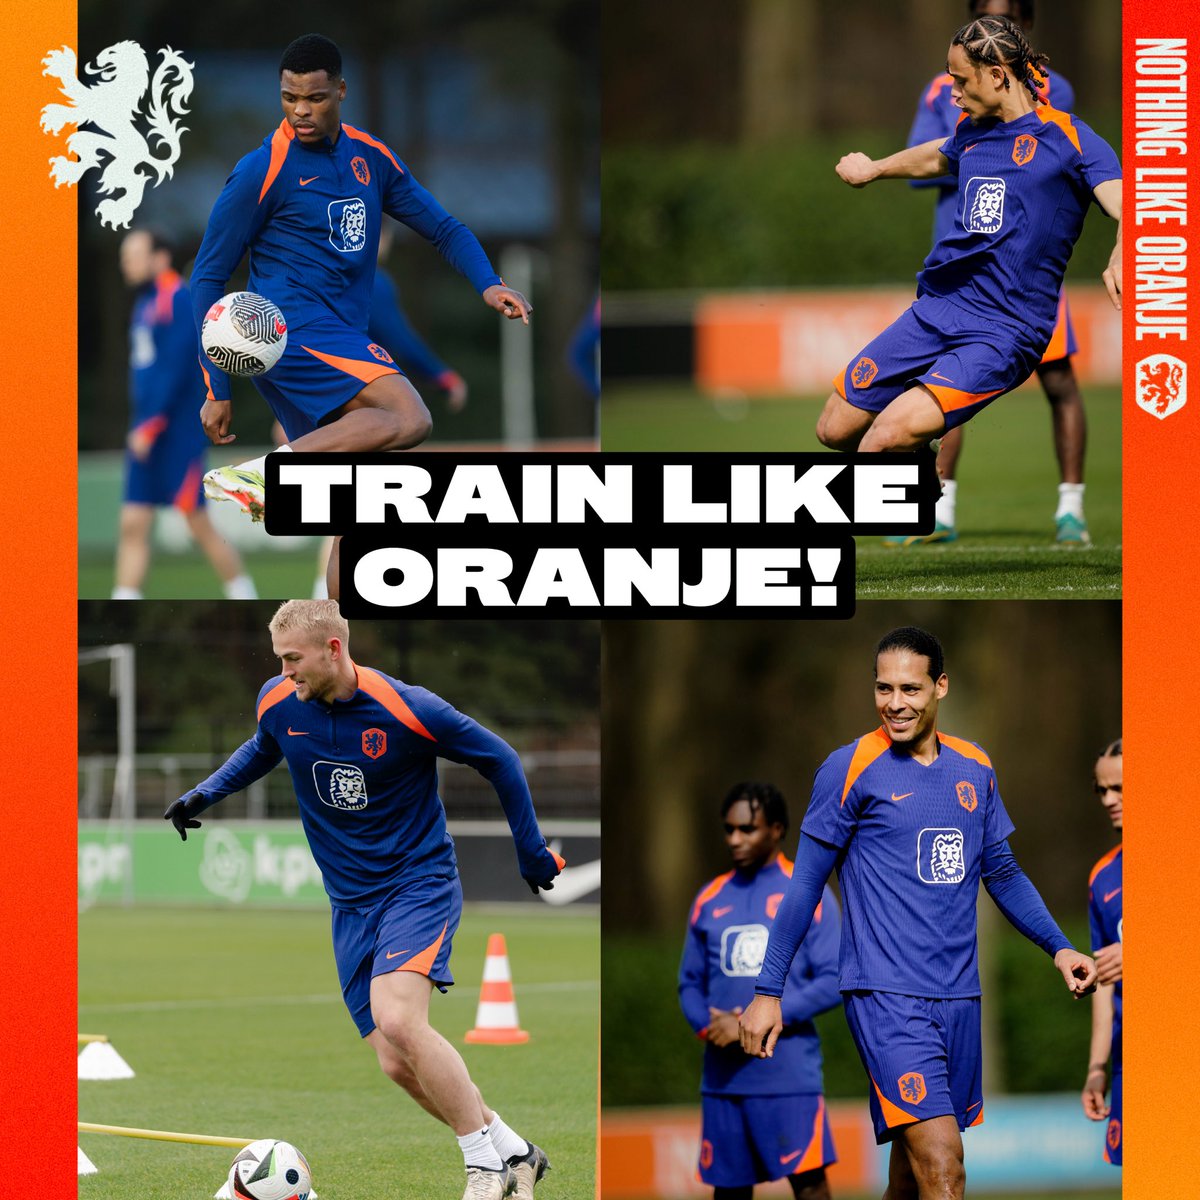 Get your Oranje training kit! 🏋️ 🛍️: onsoran.je/Training2426 #NothingLikeOranje